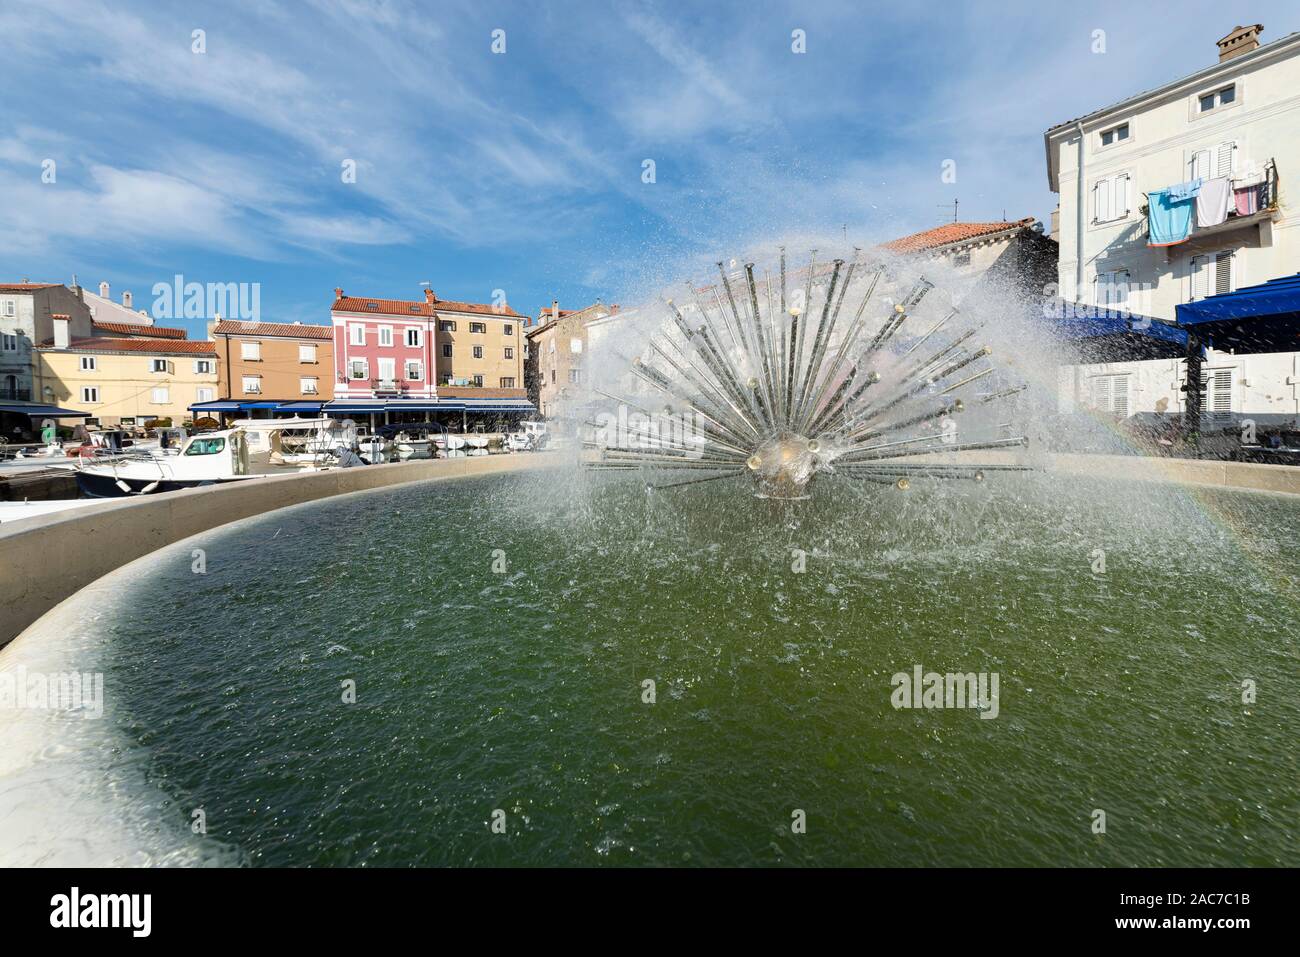 Fontaine sphérique dans le port de la vieille ville de Cres avec cafés et restaurants dans le soleil du matin, Cres, la baie de Kvarner, Croatie Banque D'Images